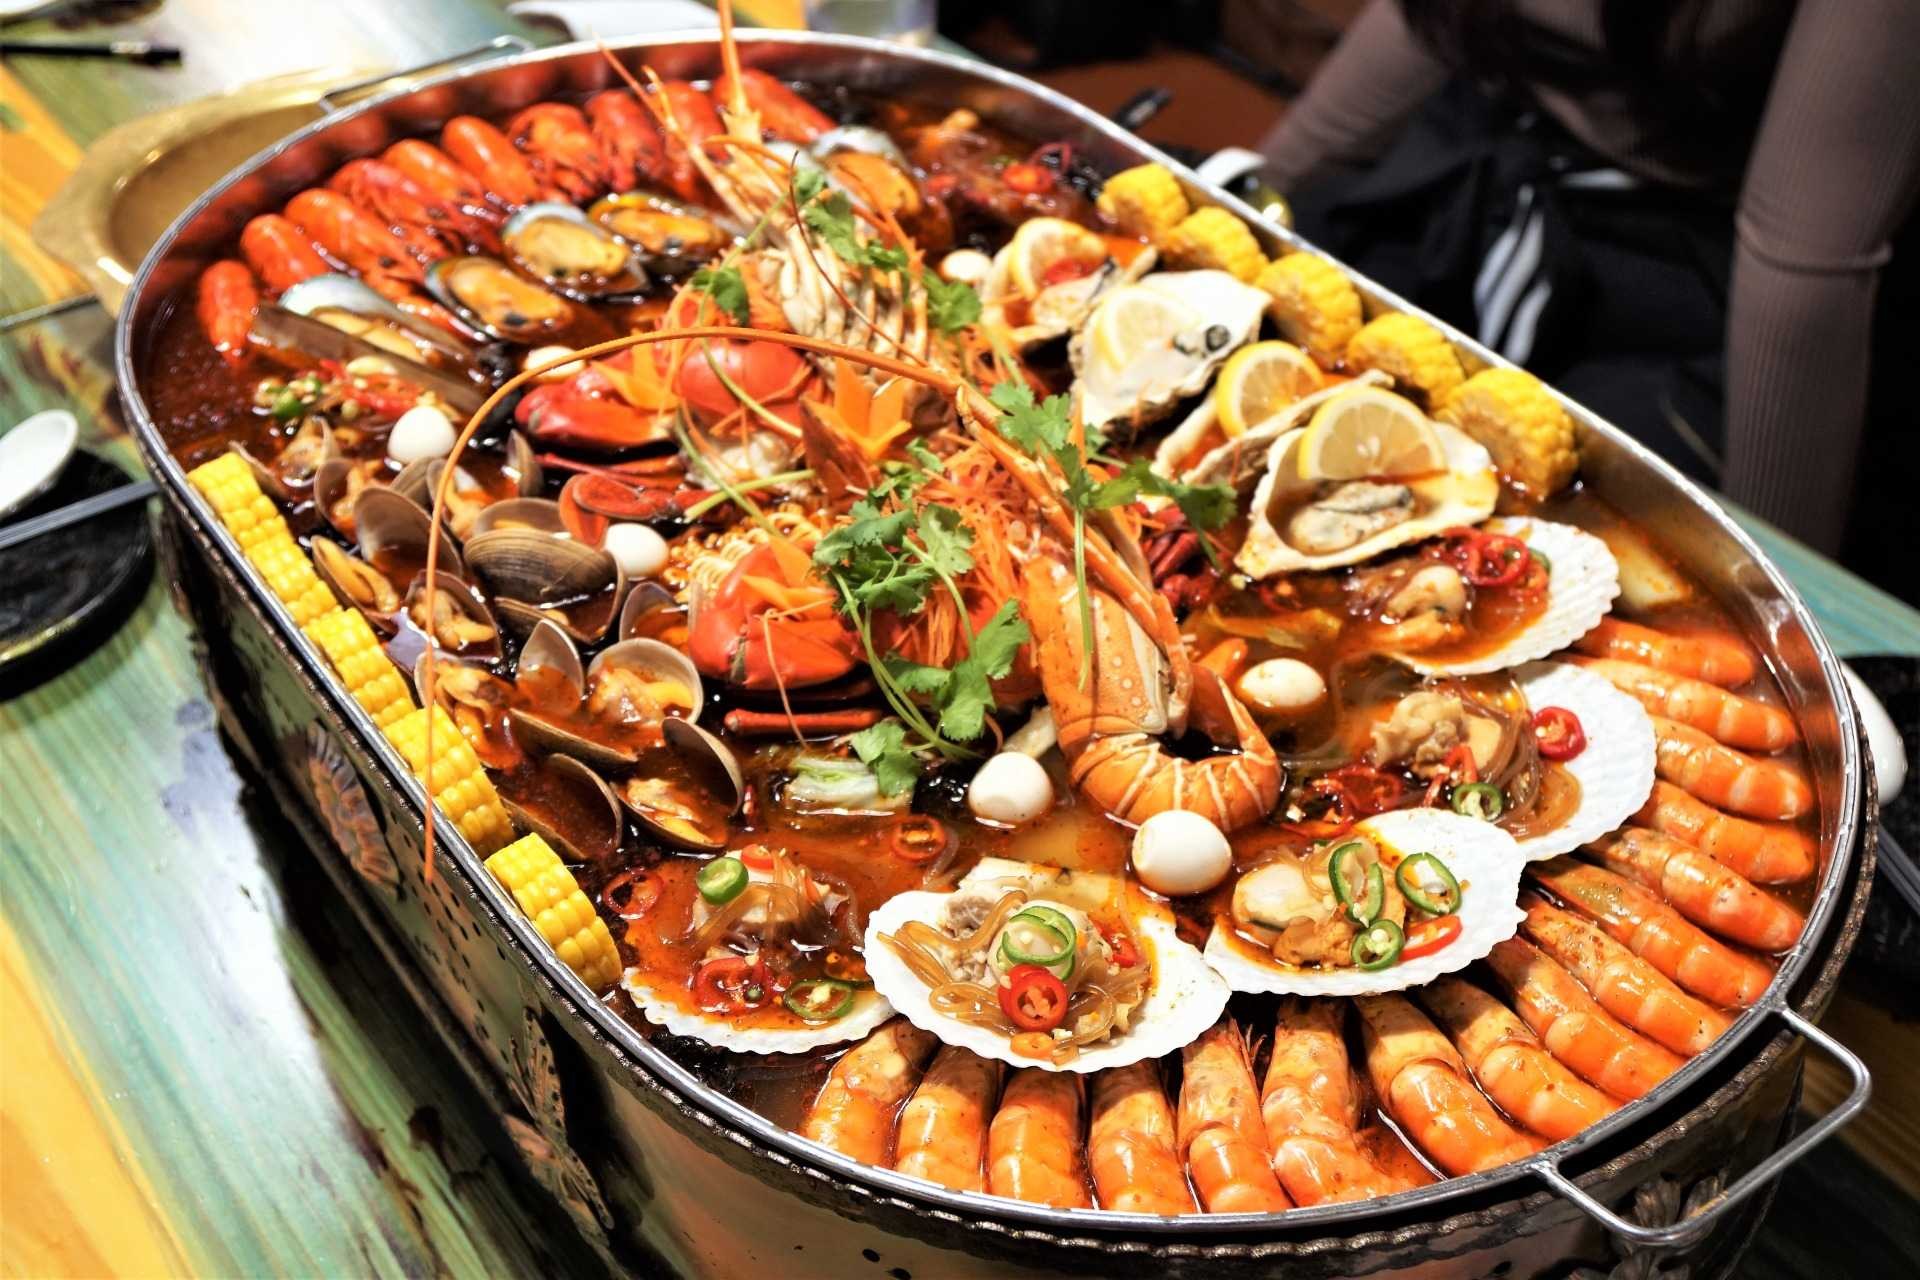 Big dish. Морепродукты. Большие блюда. Большая тарелка с морепродуктами. Морепродукты на праздничный стол.